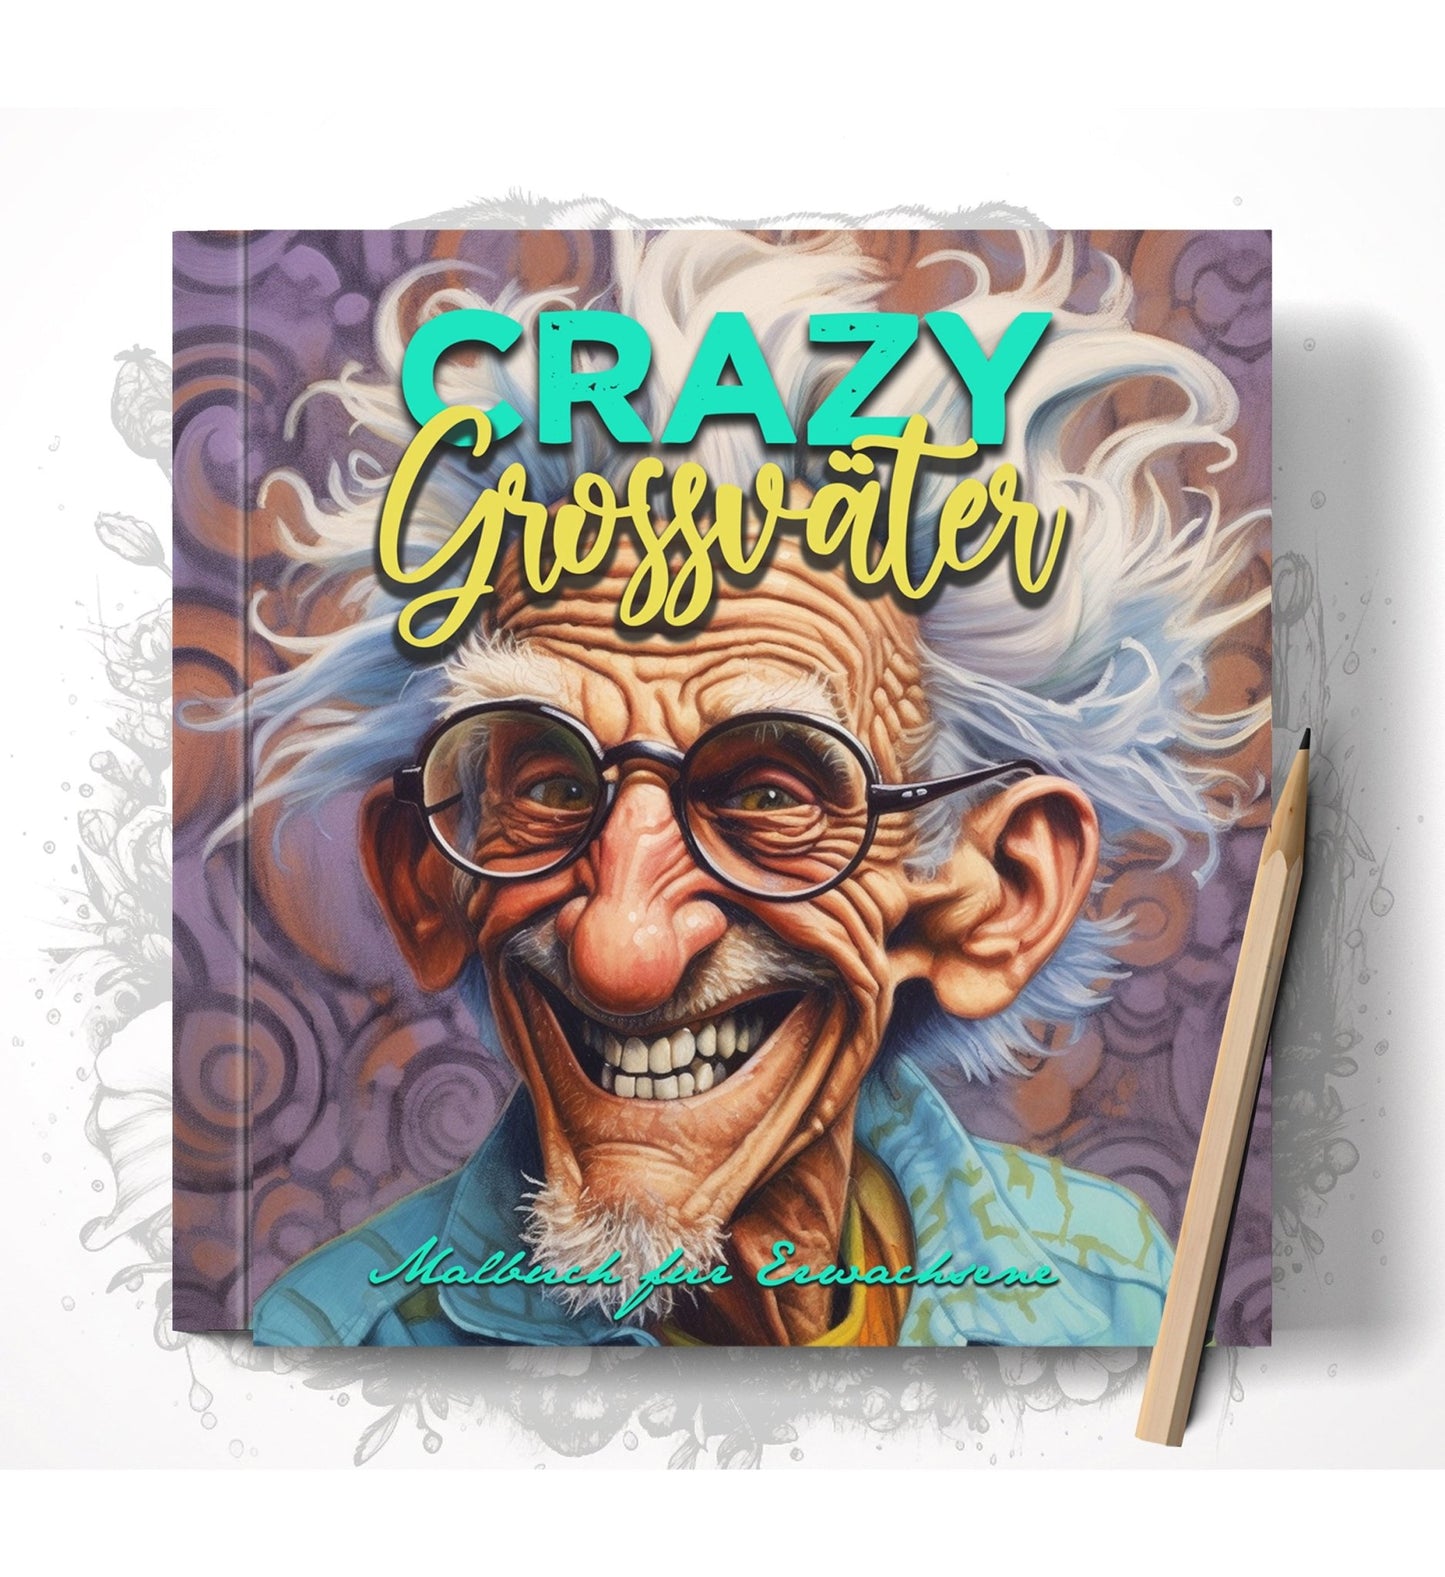 Crazy Grossväter Malbuch Graustufen (Buchdruck) - Monsoon Publishing